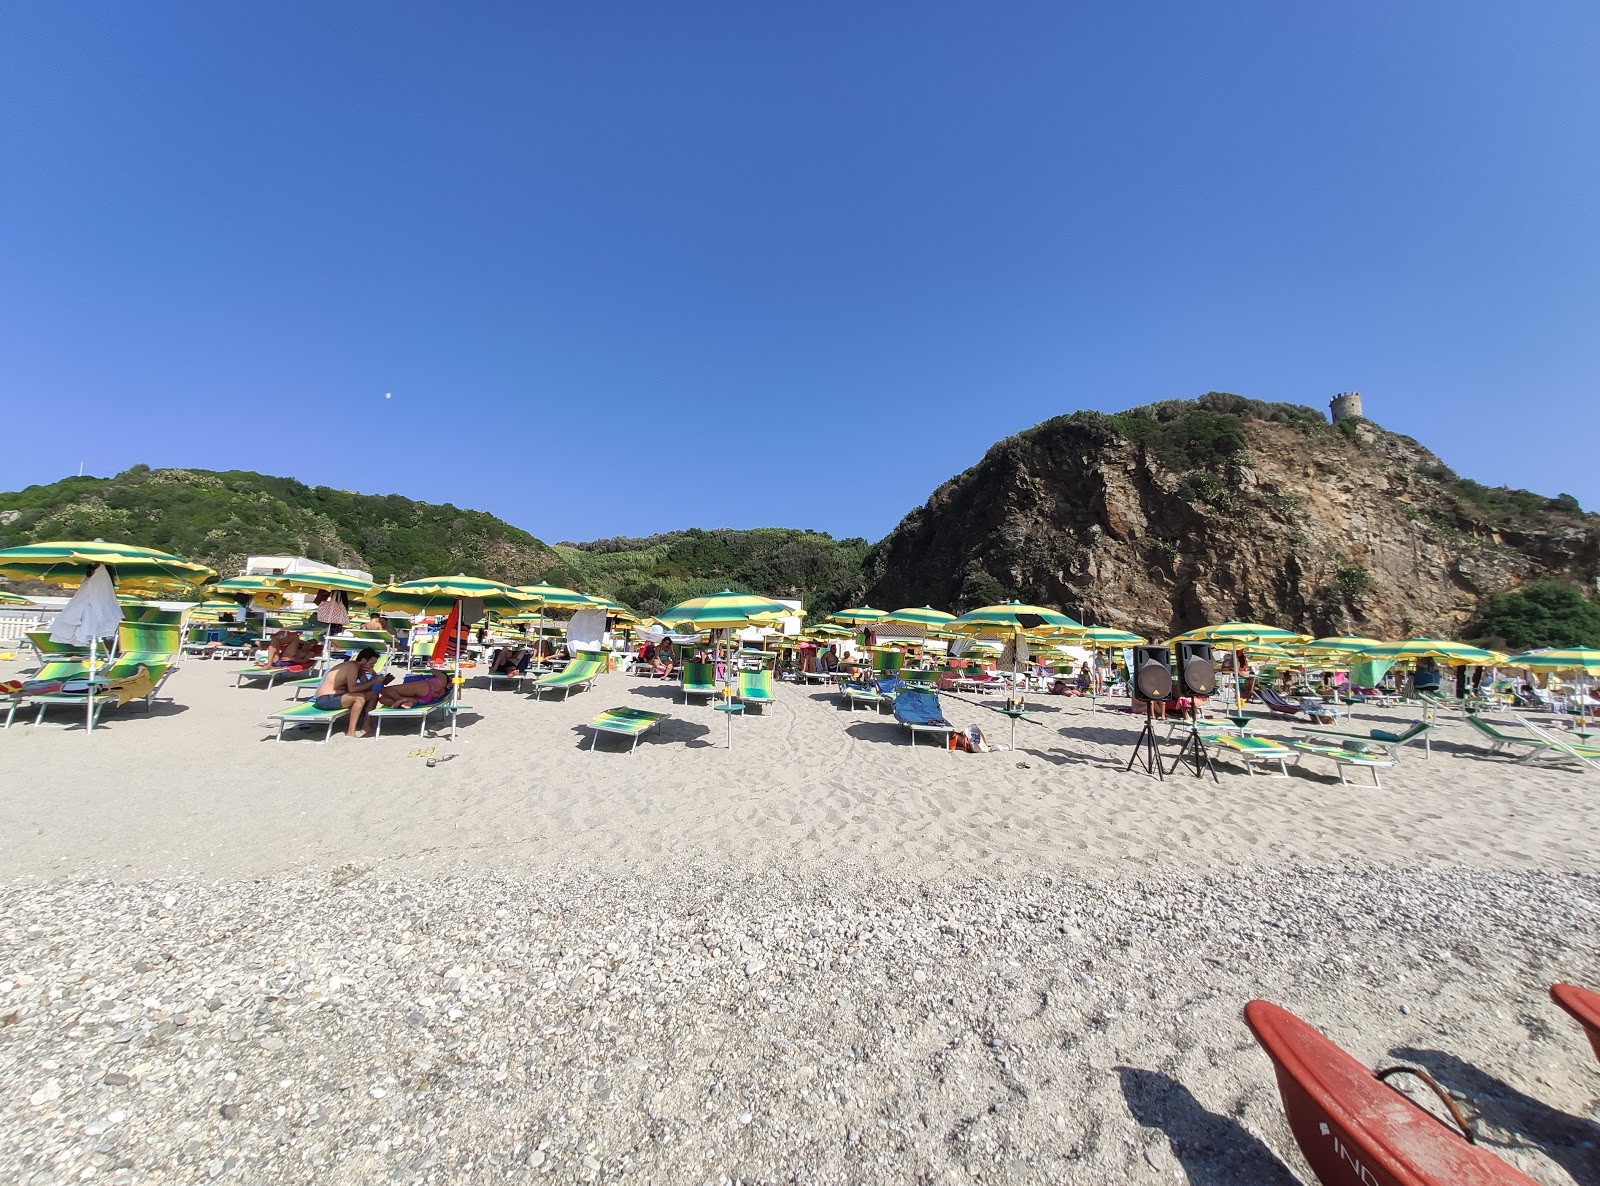 Photo de Torre Saracena beach - endroit populaire parmi les connaisseurs de la détente